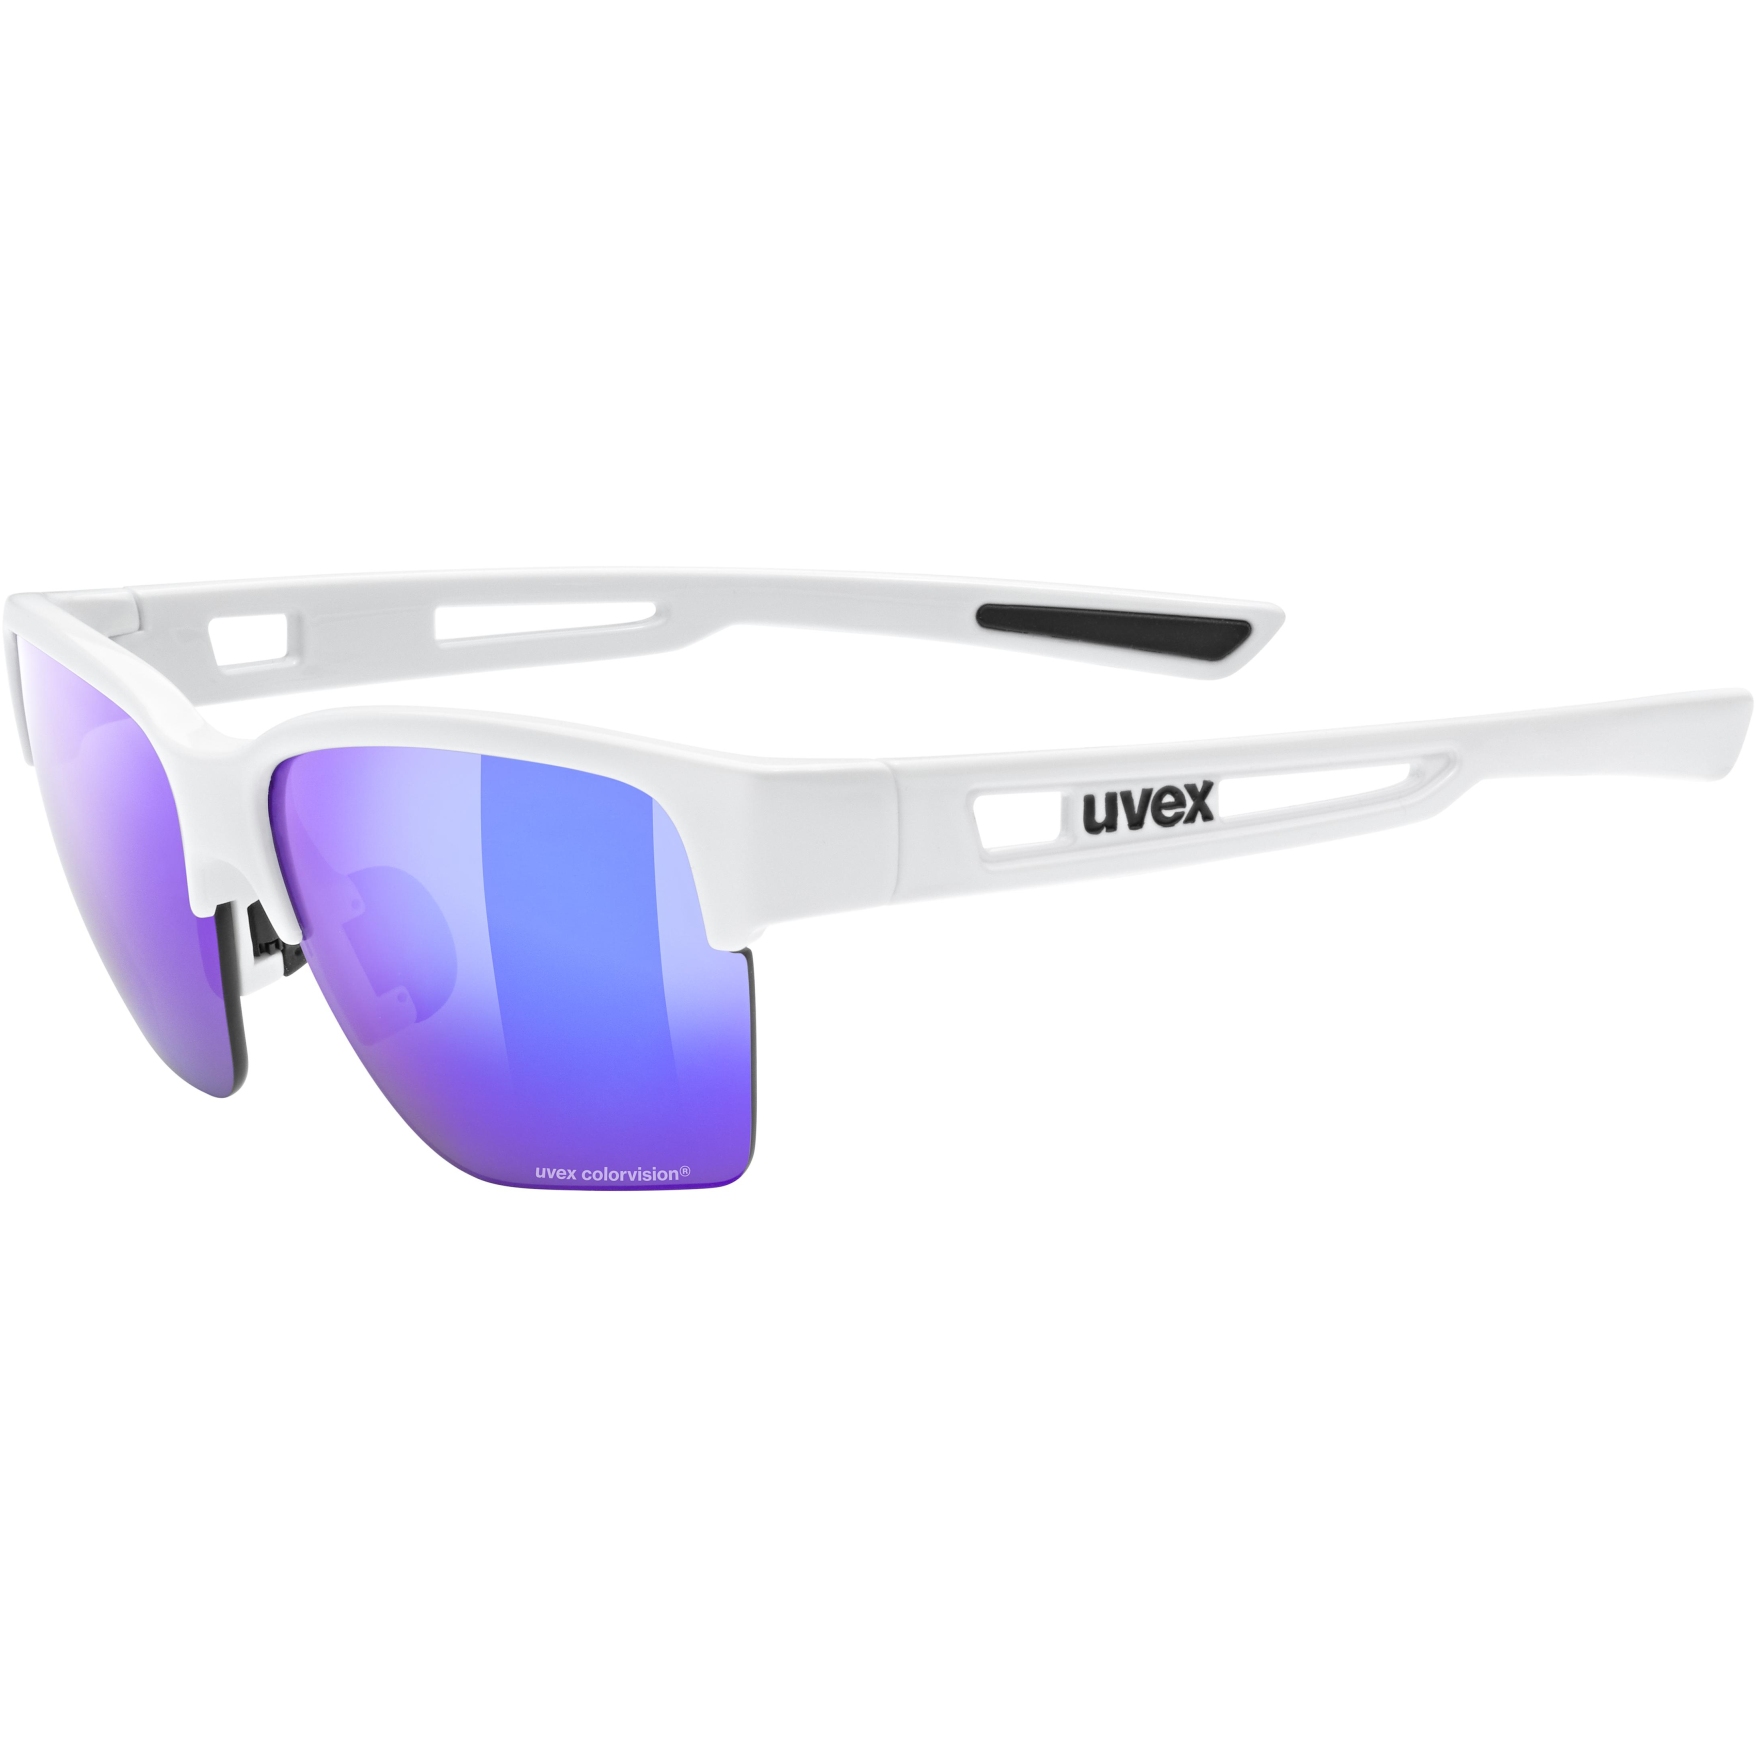 Produktbild von Uvex sportstyle 805 CV Brille - white/colorvision mirror plasma